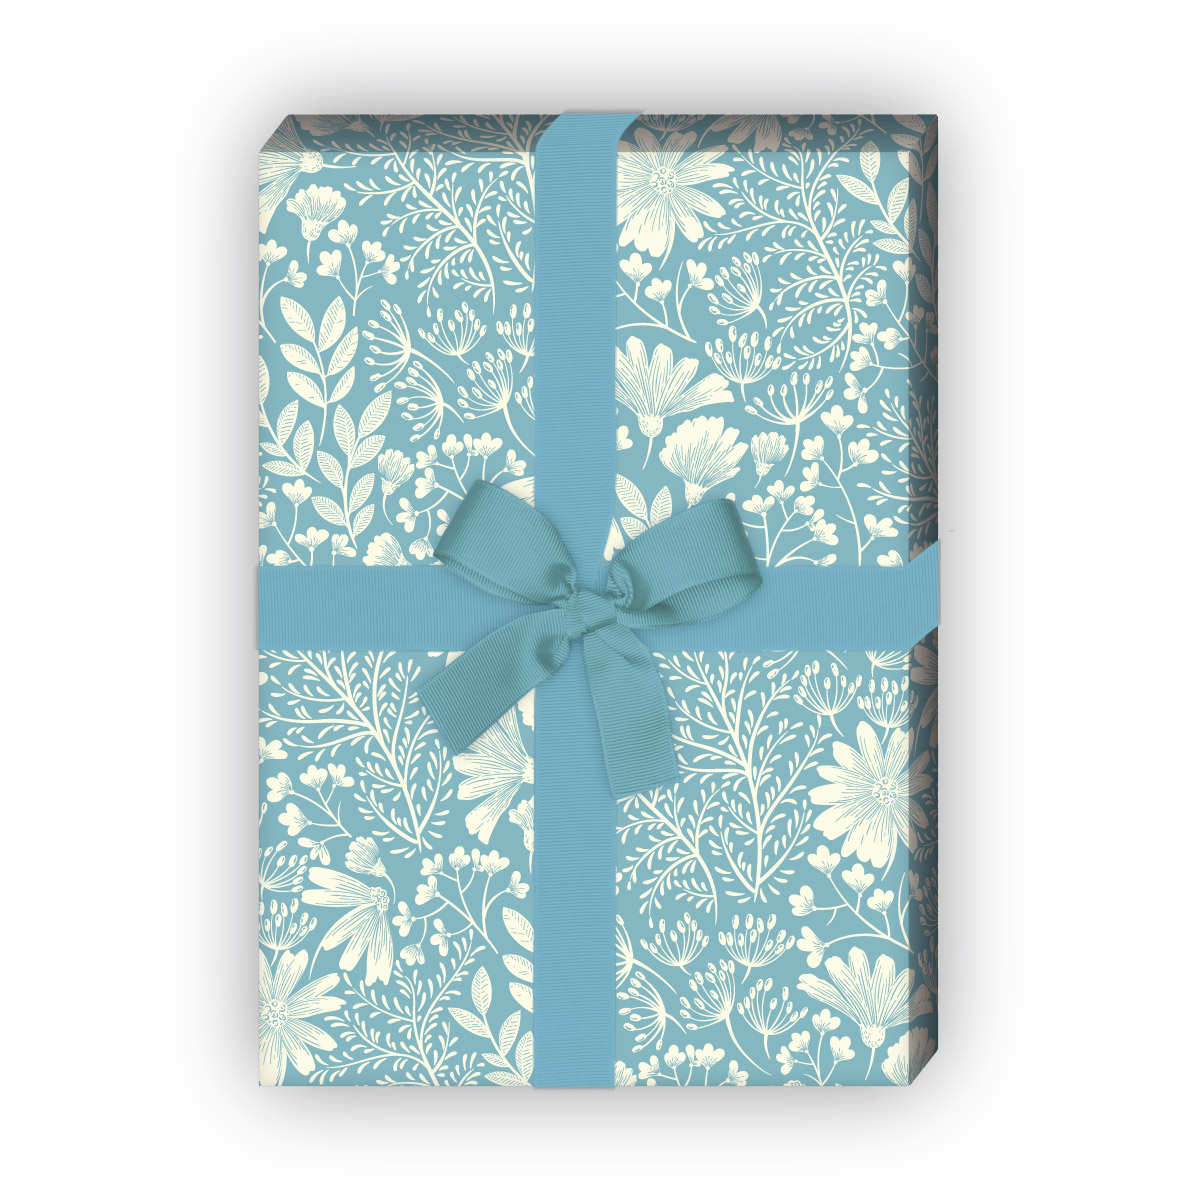 Kartenkaufrausch: Zartes Blumen Geschenkpapier mit aus unserer florale Papeterie in hellblau